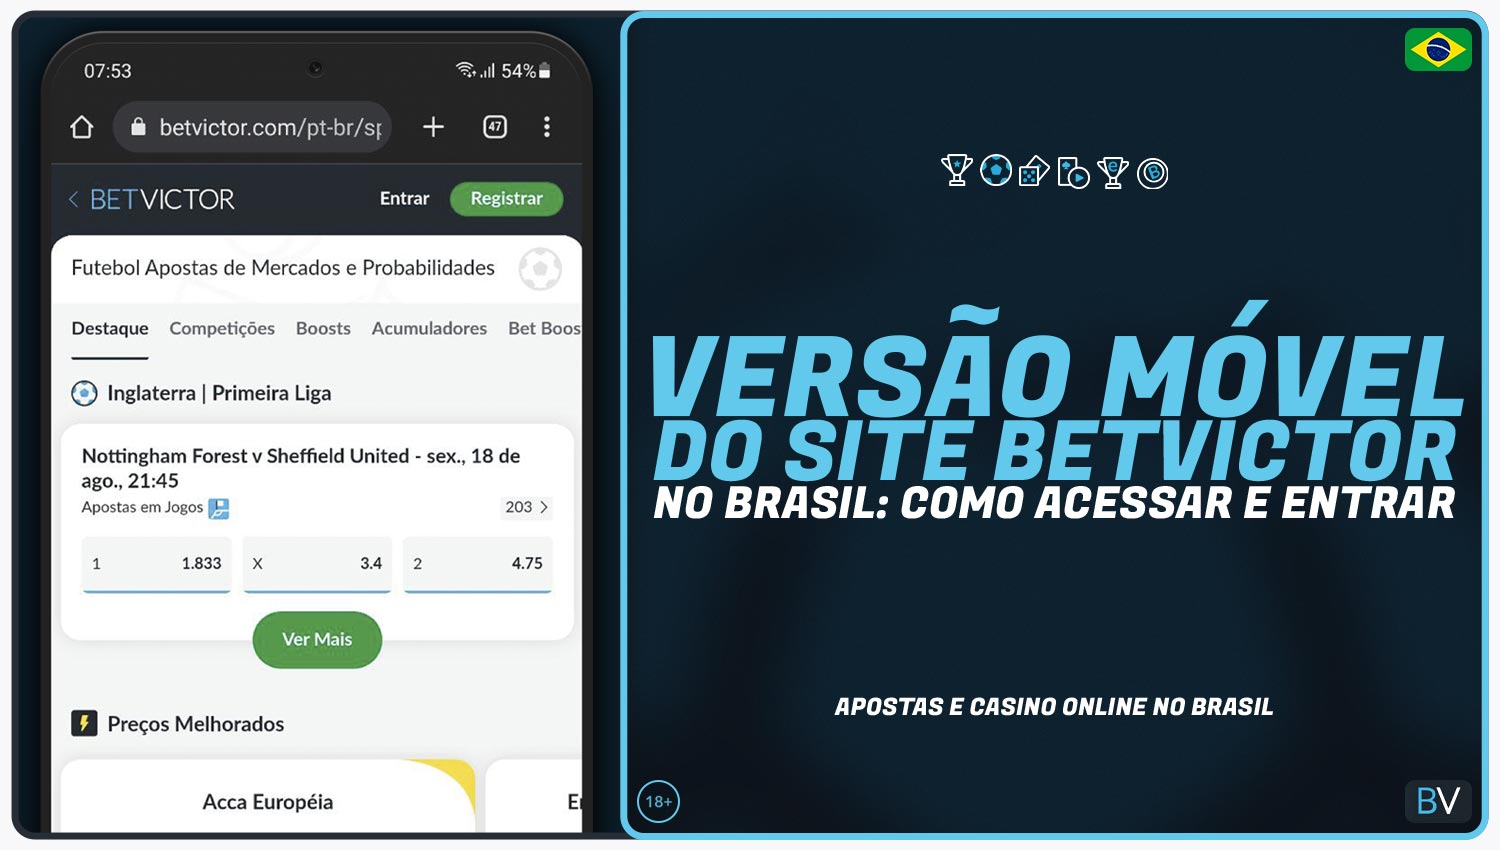 Análise detalhada da versão móvel do site da Betvictor no Brasil.